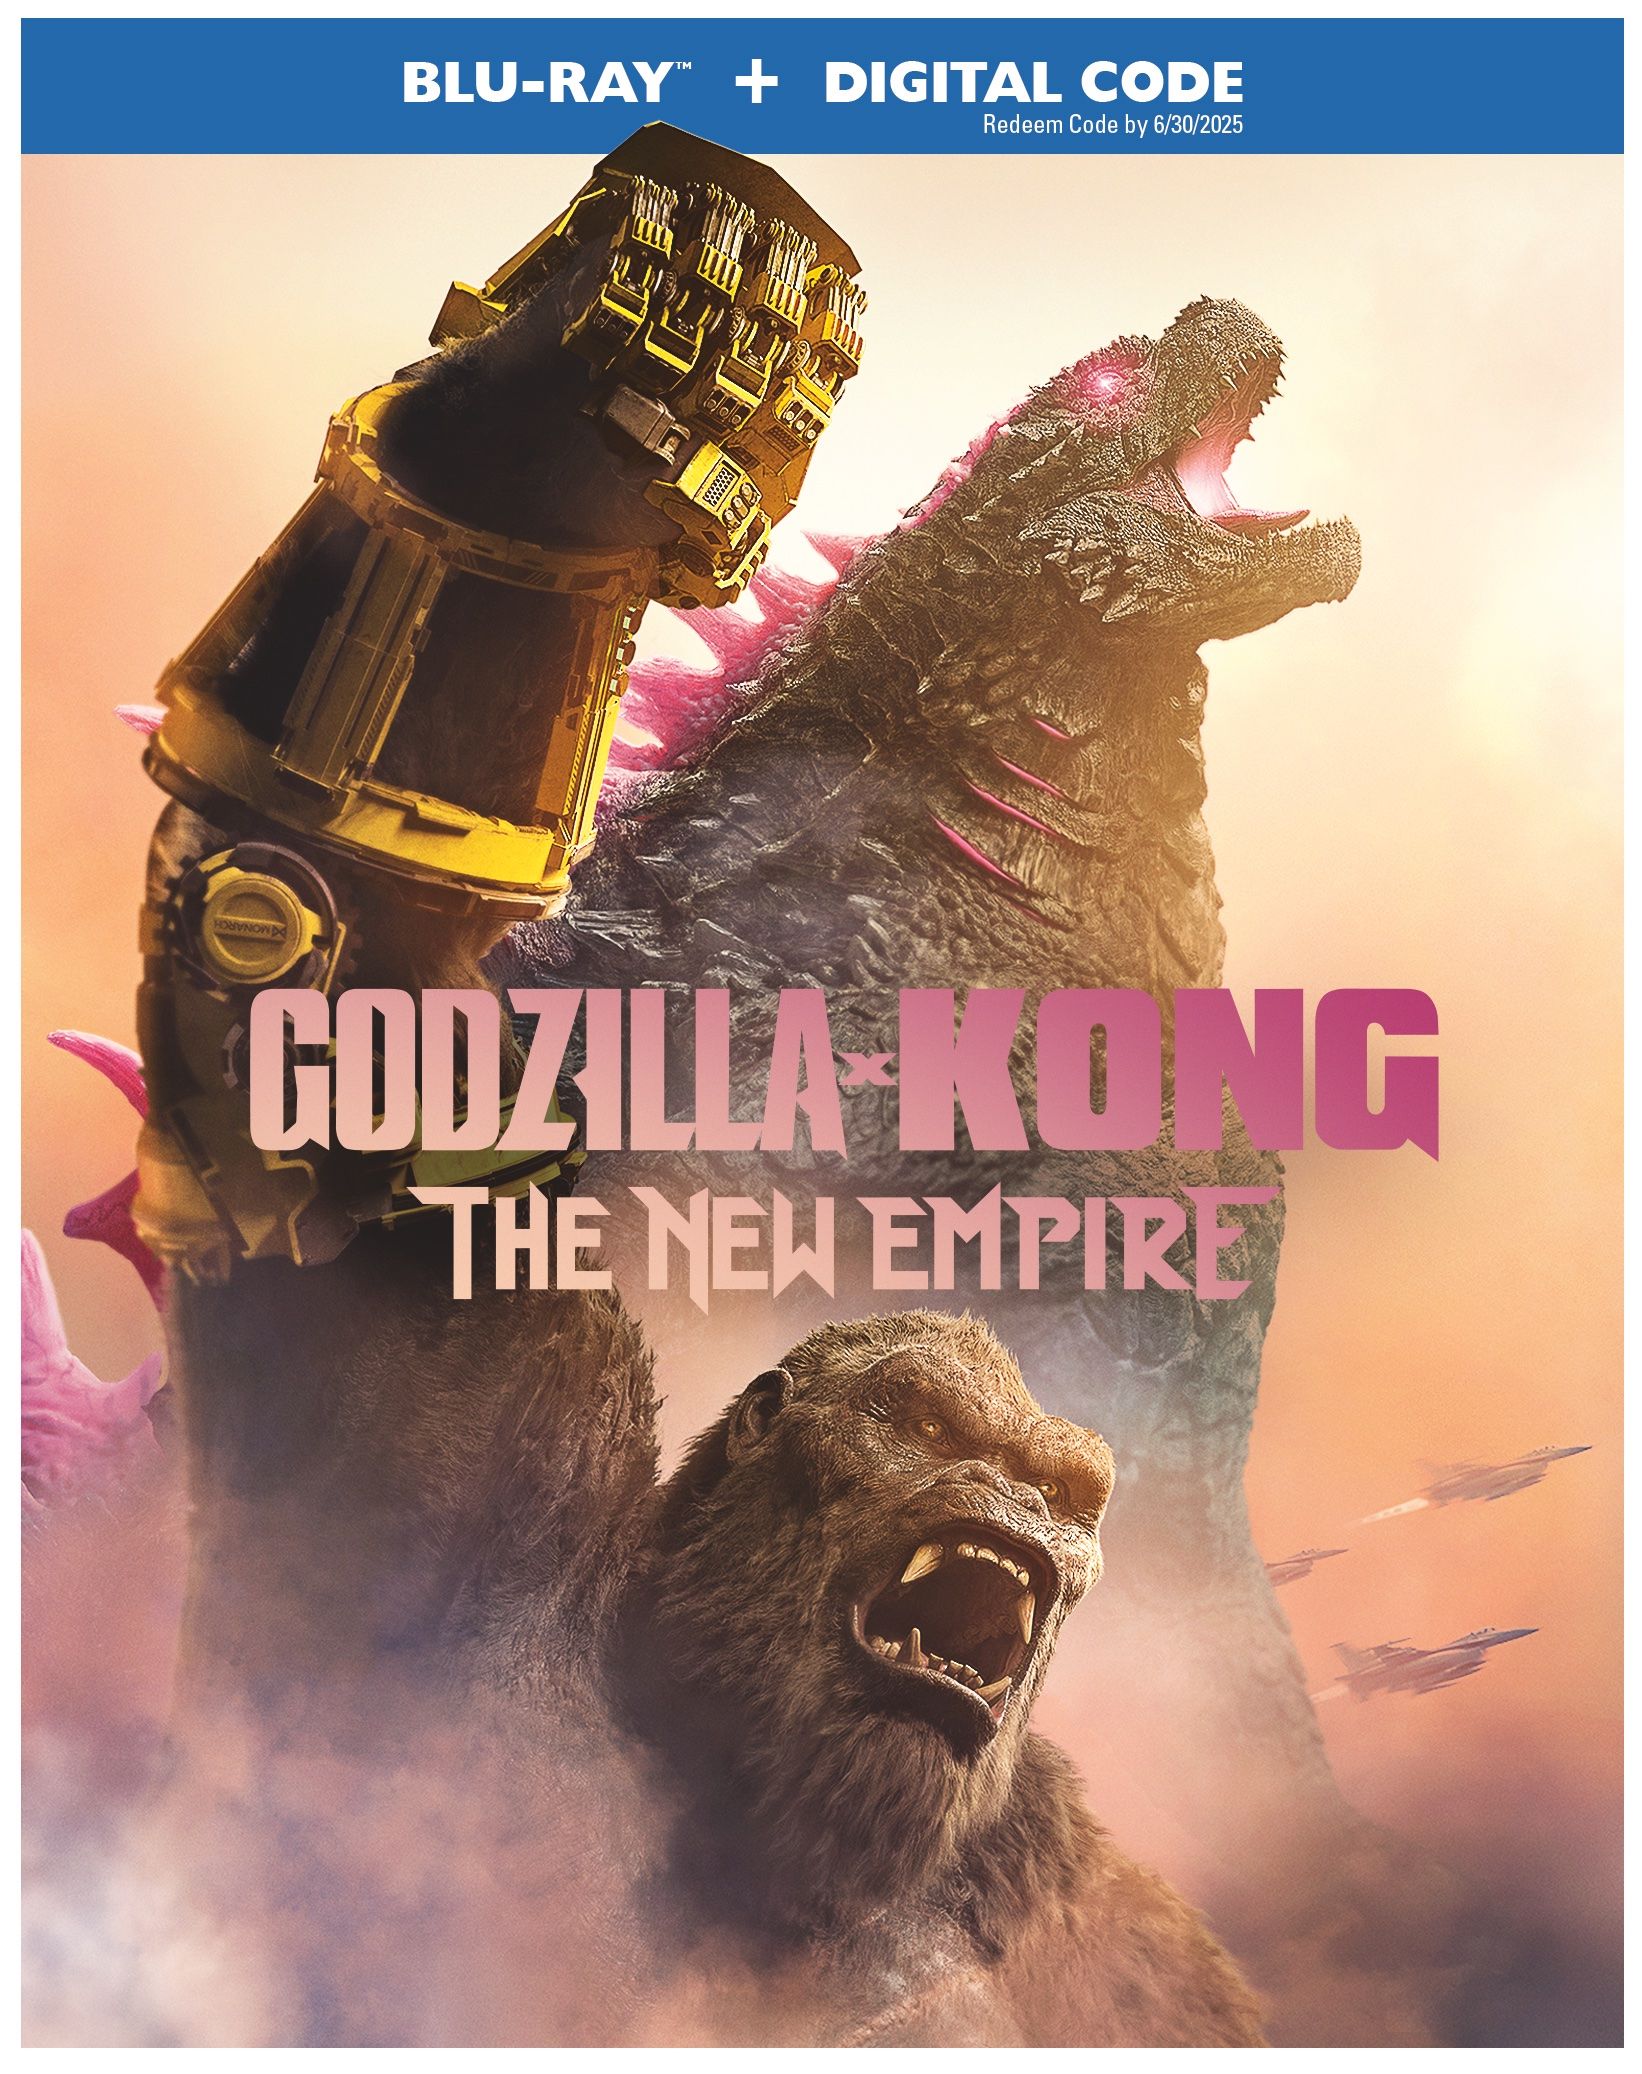 Godzilla x Kong устанавливает дату выпуска 4K UHD, Blu-ray и DVD, раскрыты бонусные функции